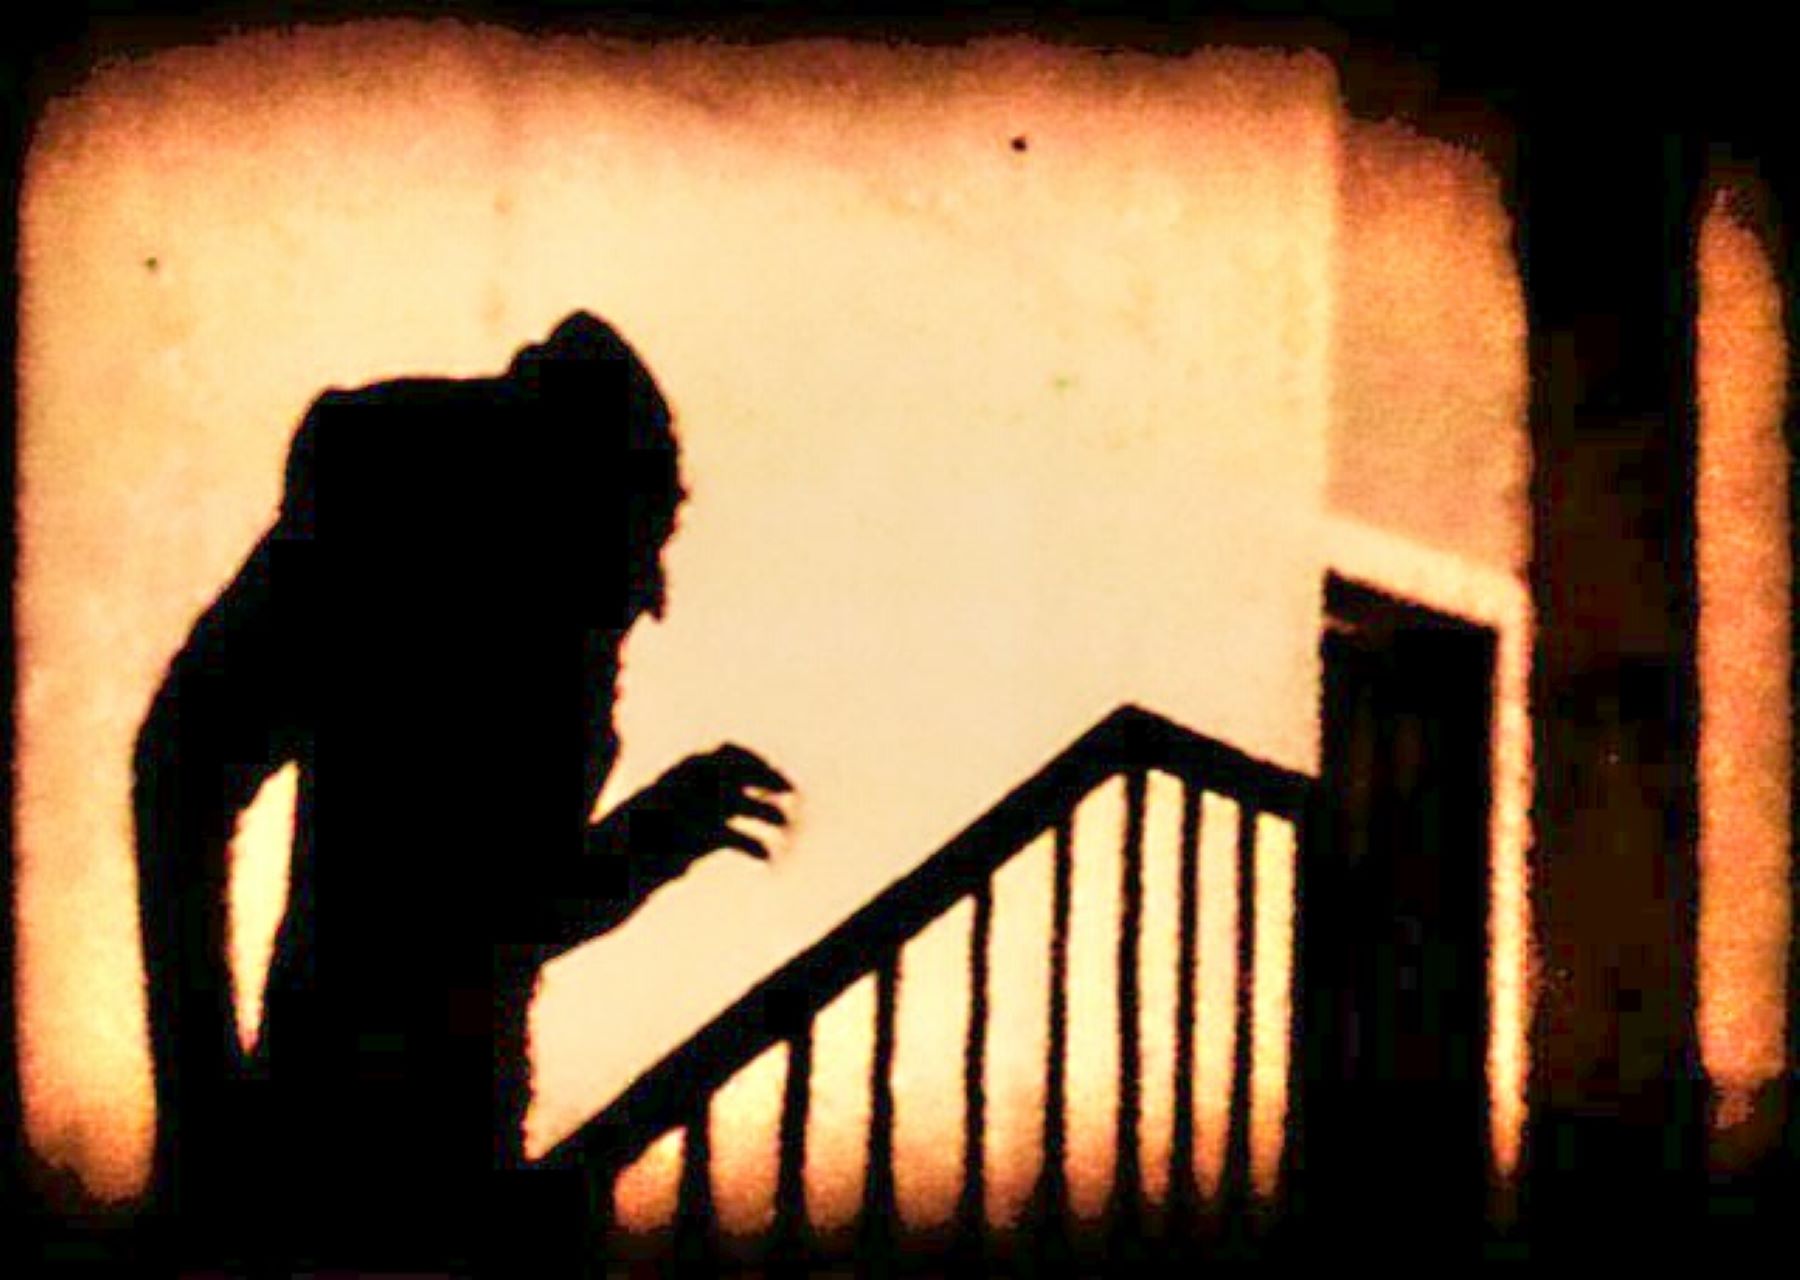 shadowy figure walking up stairs menacingly